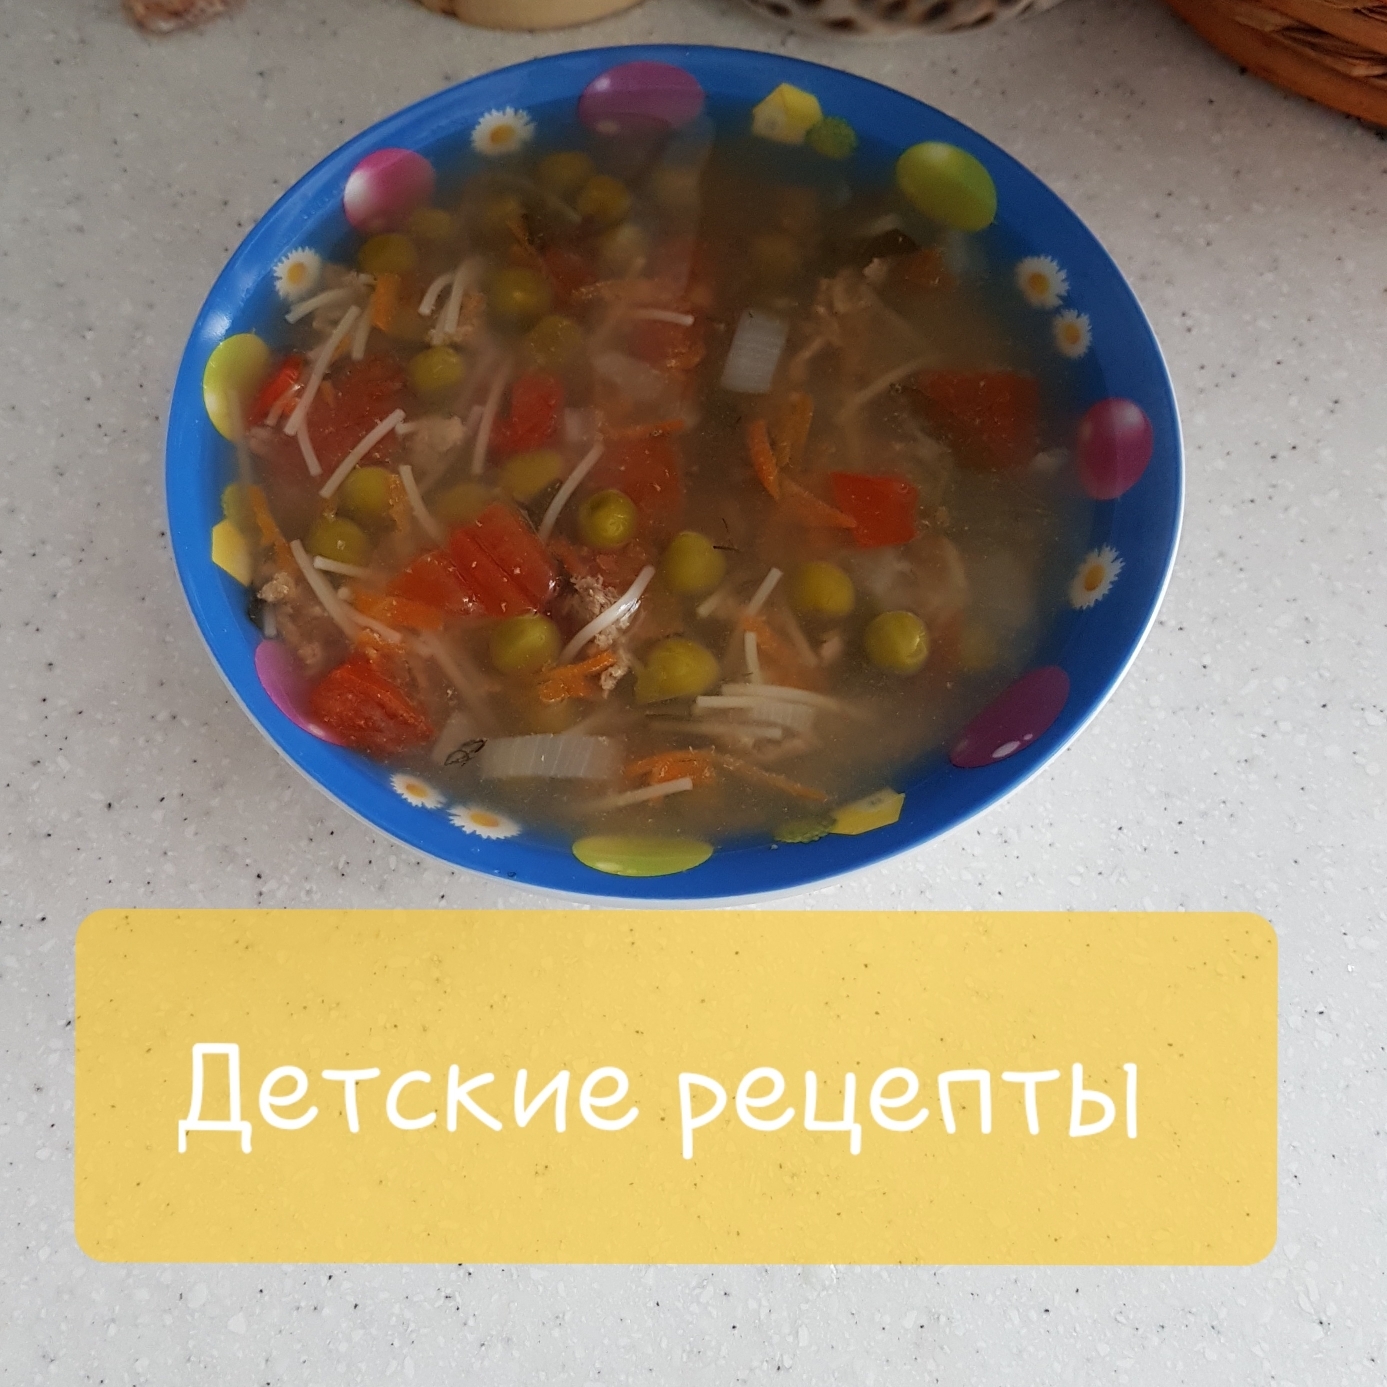 Вкусный суп с куриными фрикадельками и вермишелью рецепт с фото пошагово - вороковский.рф